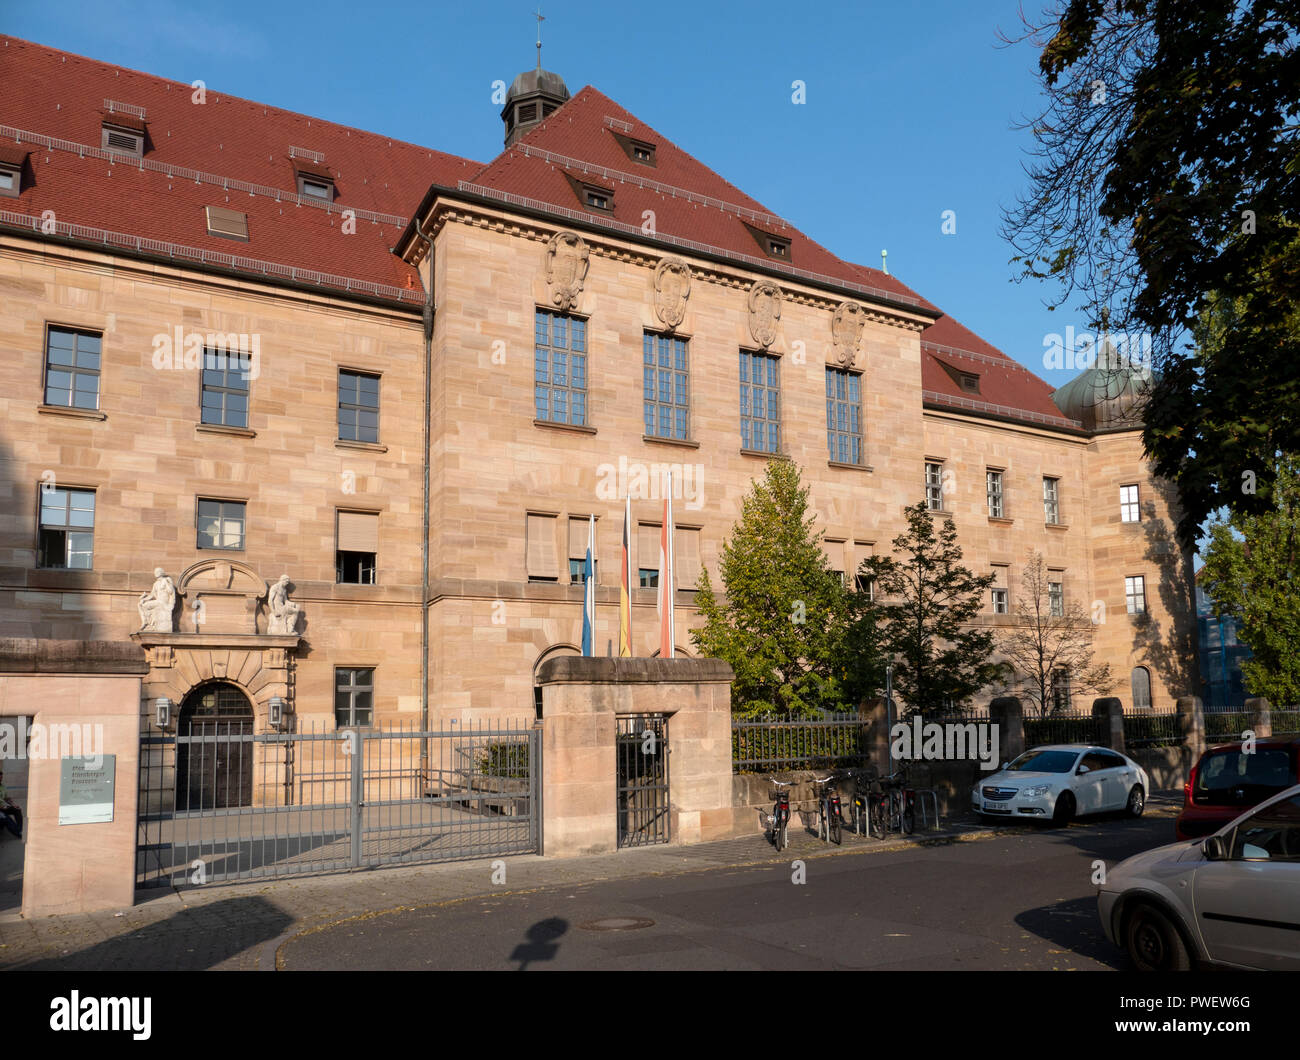 Gerichtssaal 600 bei der Palast der Justiz in Nürnberg, Deutschland. Ort der Nürnberger Prozesse von NS-Kriegsverbrecher wie Rudolf Hess. Stockfoto